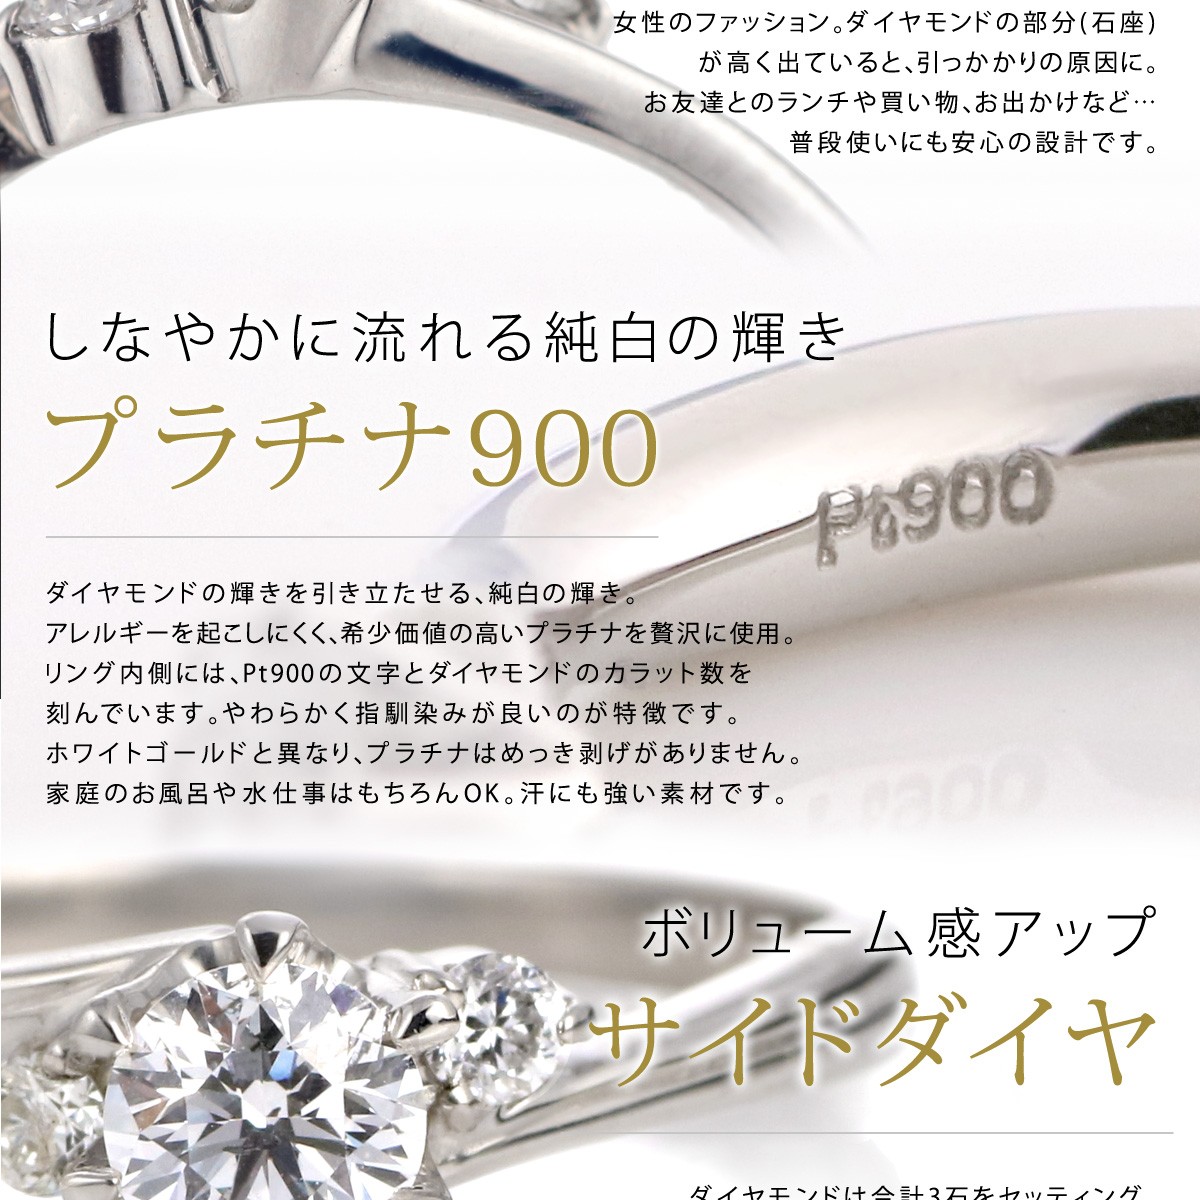 正式的100 正規品 ダイヤモンド ダイヤ エンゲージリング 人気 セール ダイヤモンド 婚約指輪 ダイヤ エンゲージリング 刻印無料 セール リング H125 Suehiro リング 指輪 プラチナ